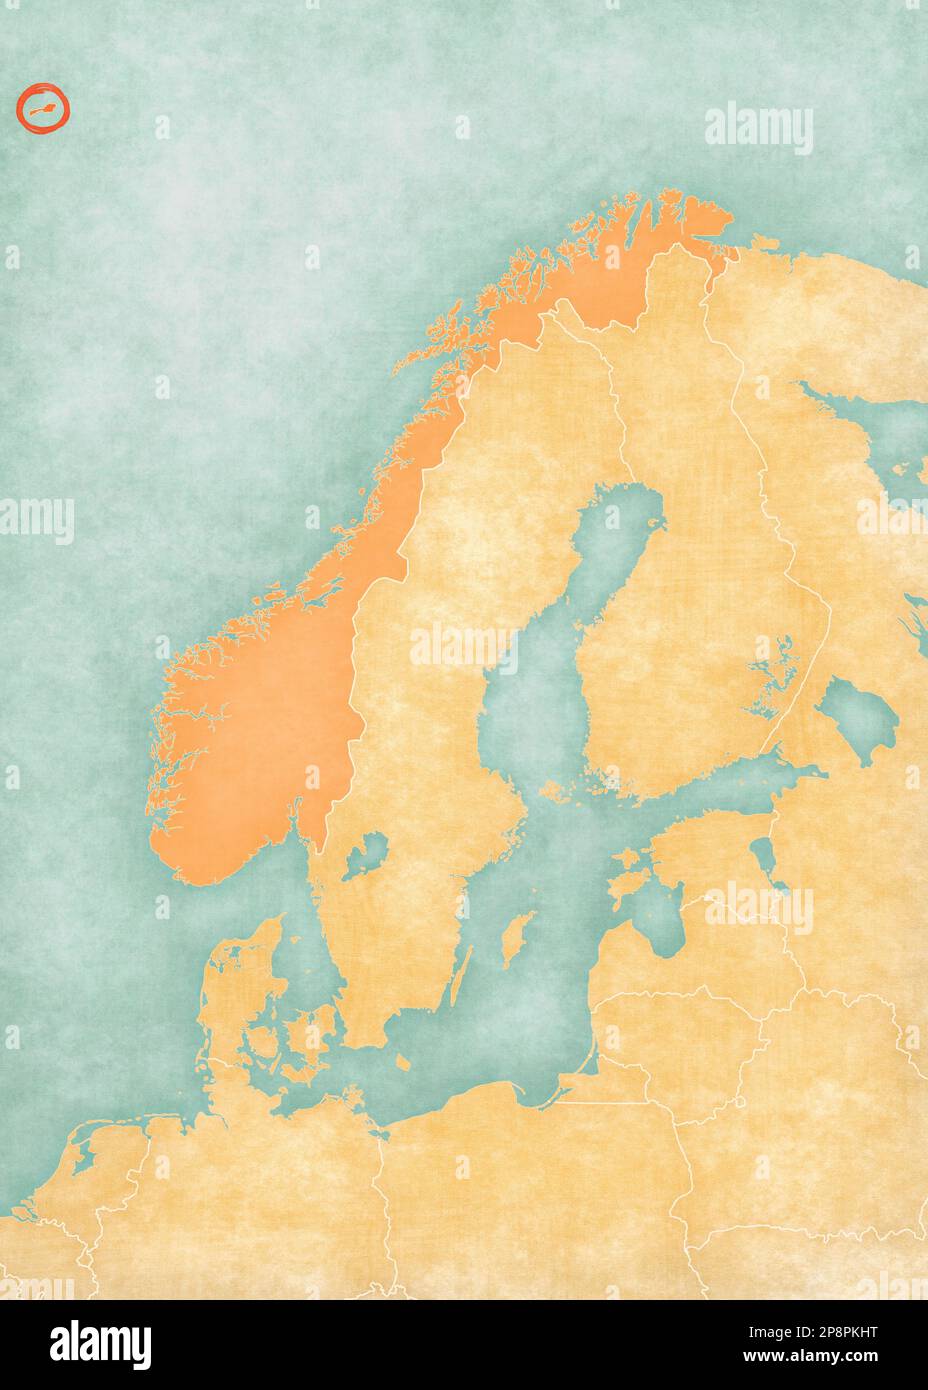 Jan Mayen sulla mappa della Scandinavia in morbido grunge e stile vintage, come carta vecchia con pittura ad acquerello. Foto Stock